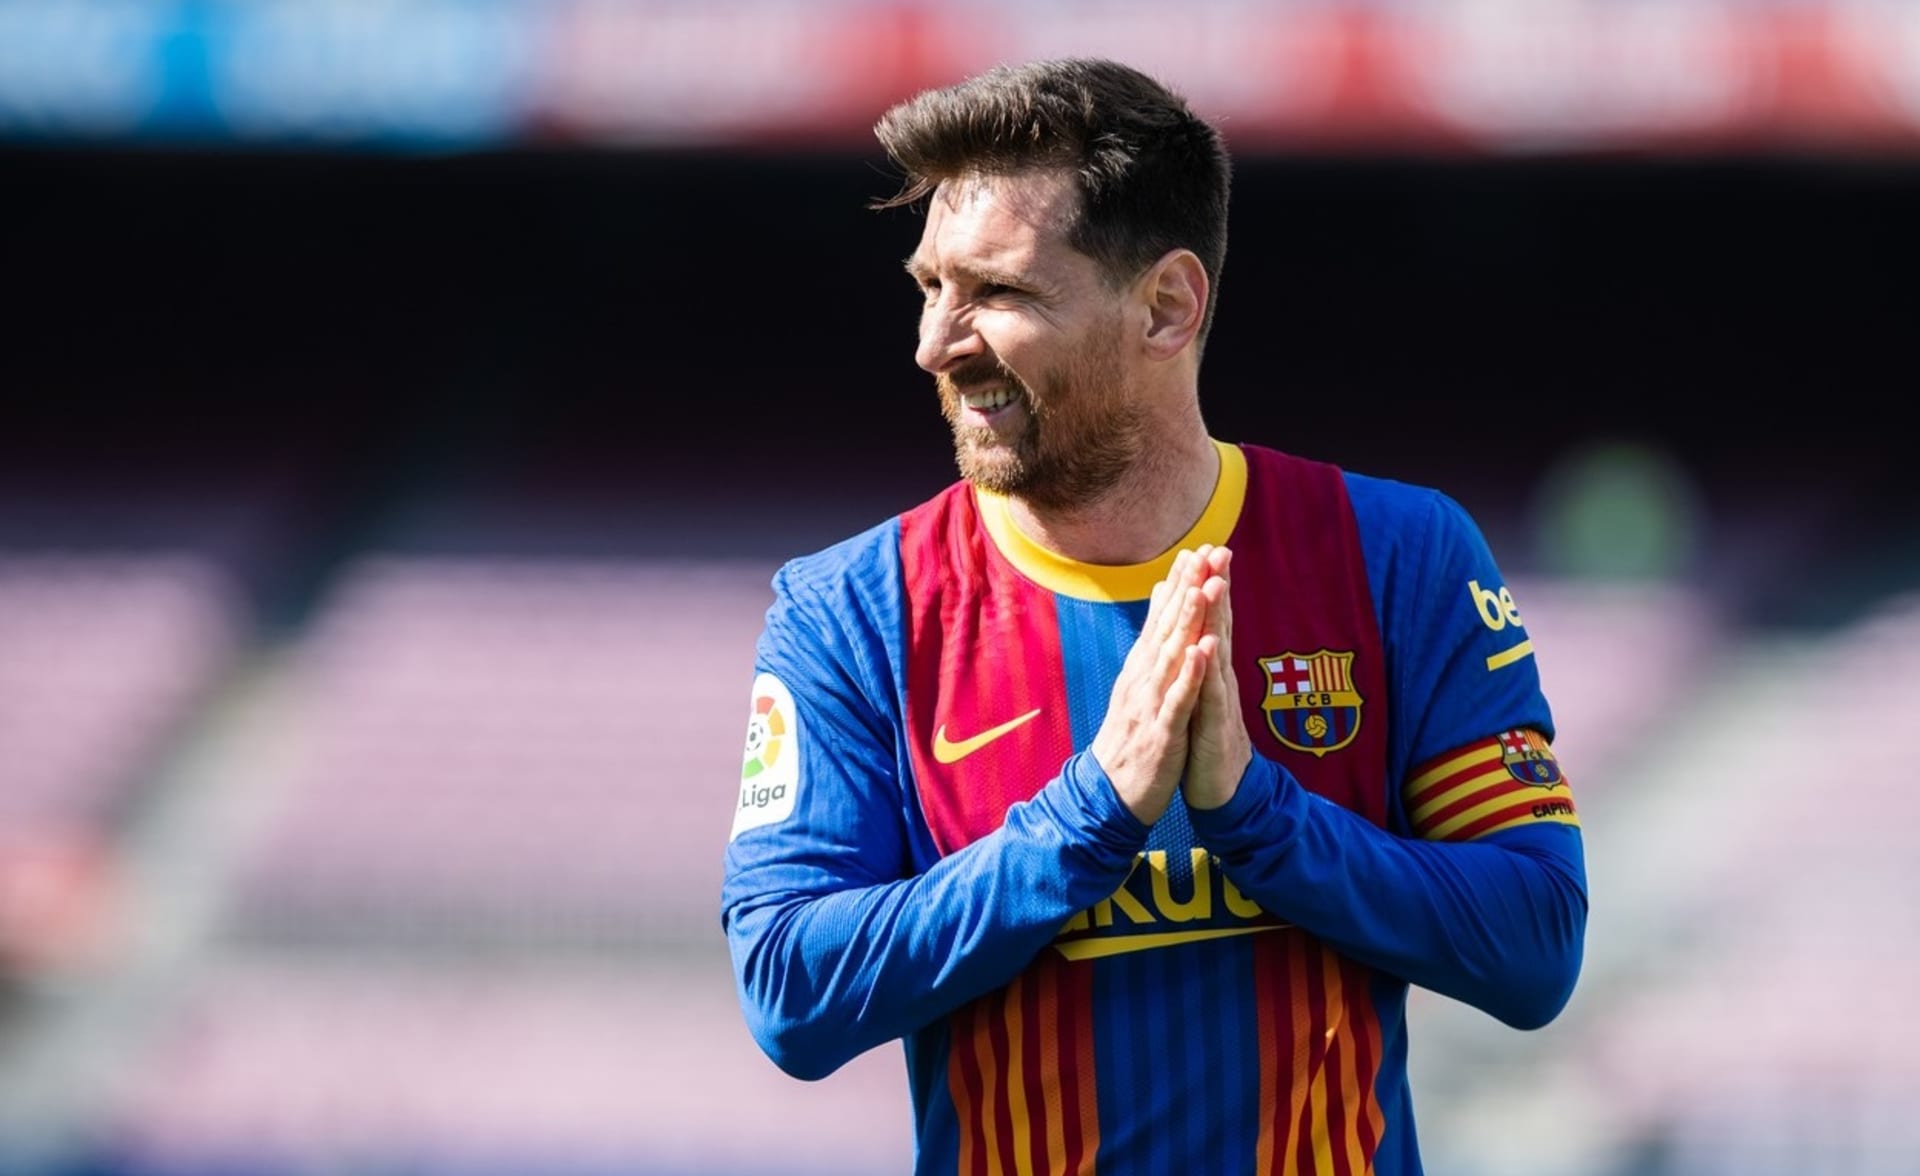 Lionel Messi opouští po 21 letech Barcelonu. Zdá se, že jeho následující kroky budou směřovat do Paříže.